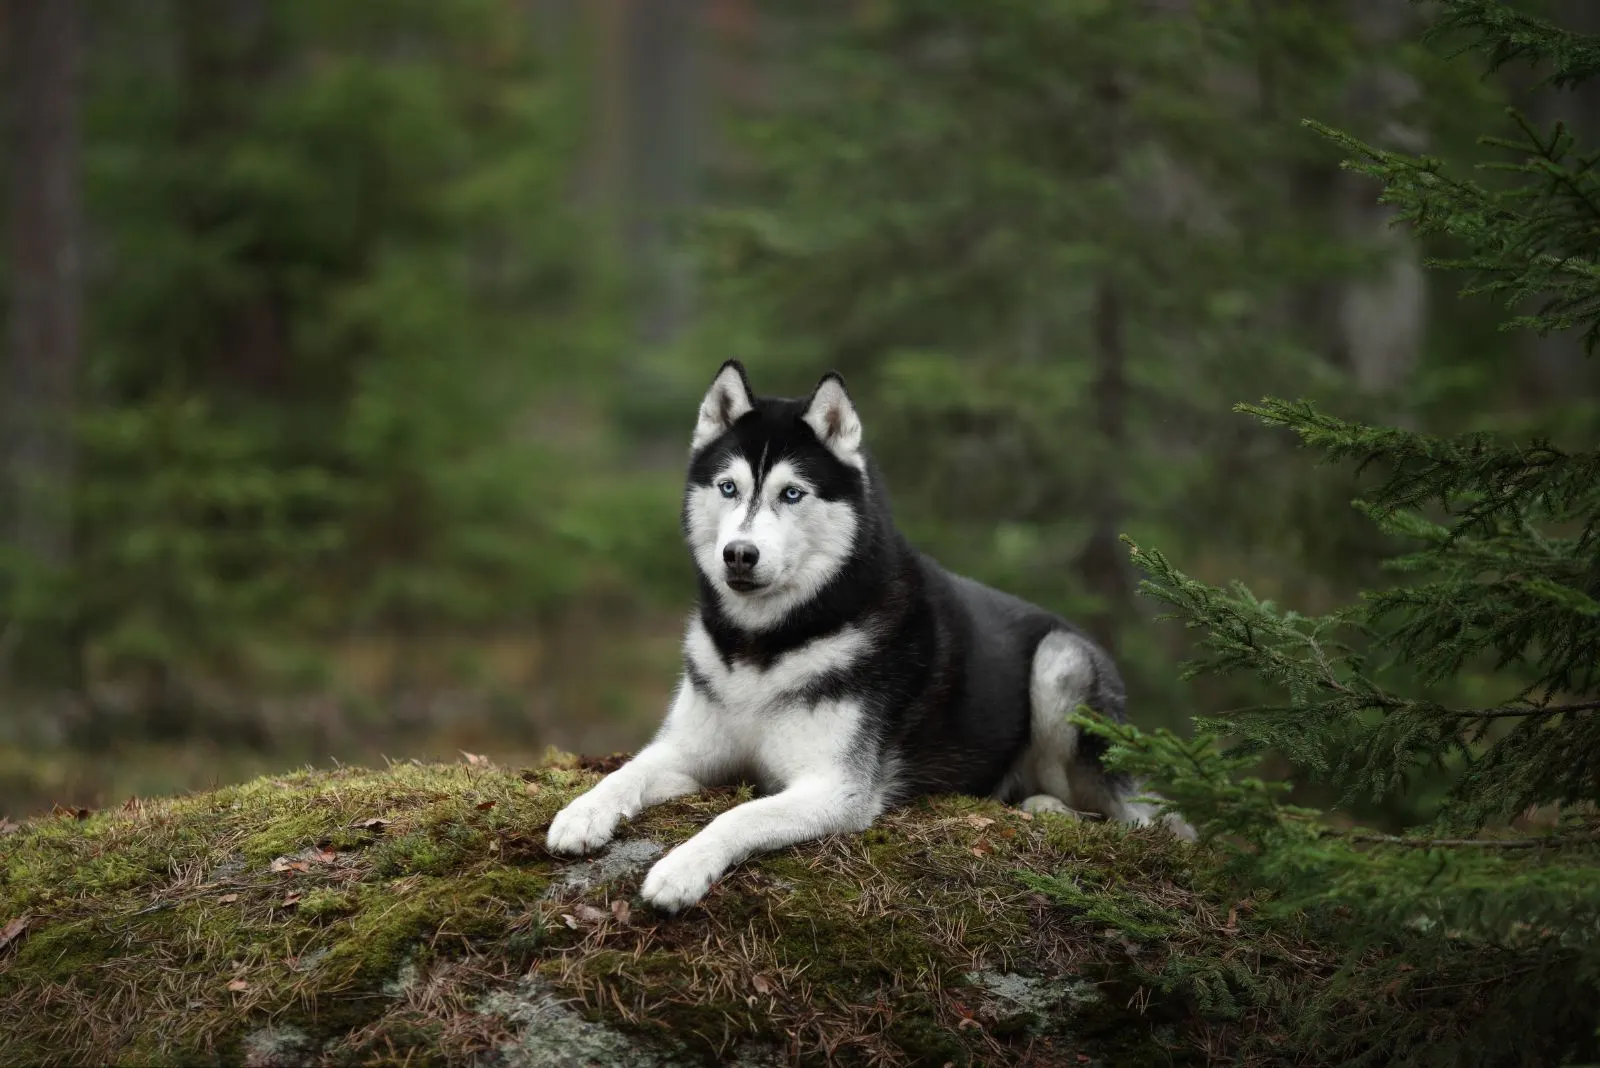 Husky sitting on a rock